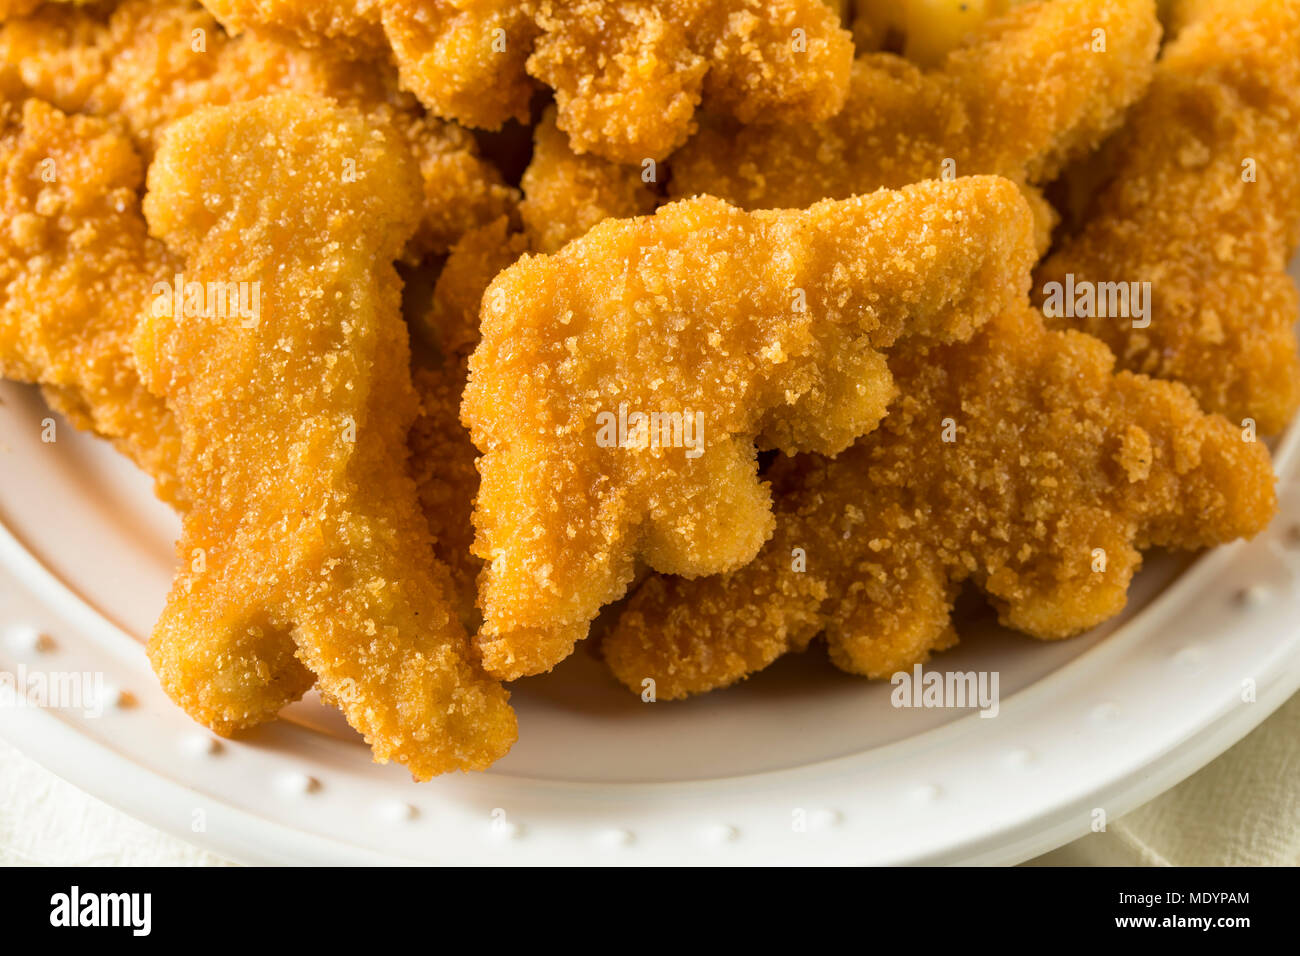 Les enfants en forme de dinosaures Nuggets de poulet prêt à manger Banque D'Images